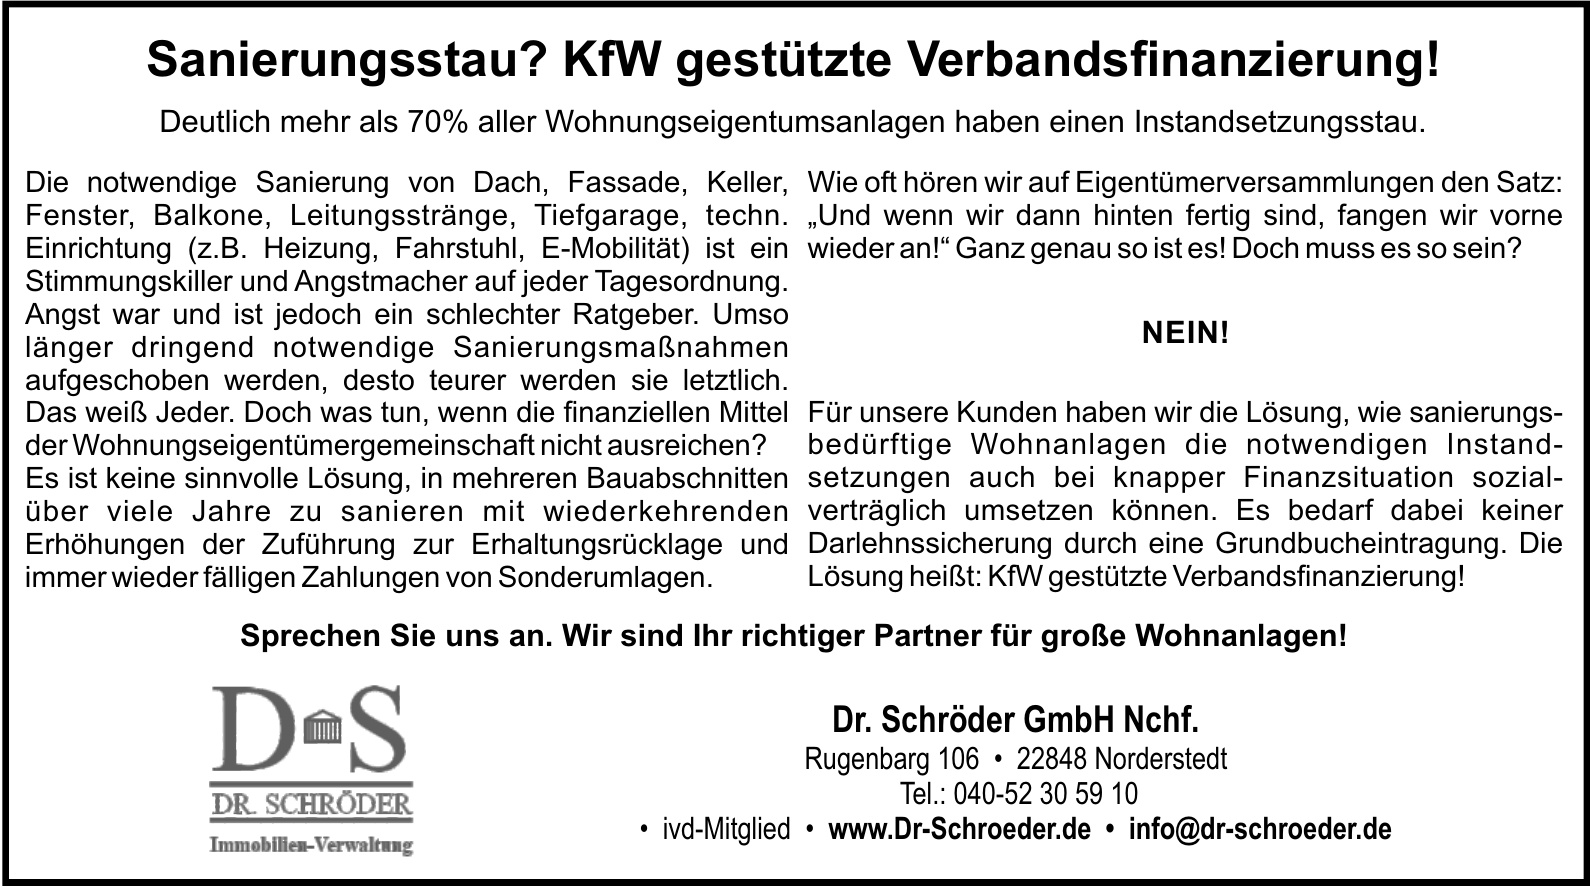 Dr. Schröder GmbH Nchf. 